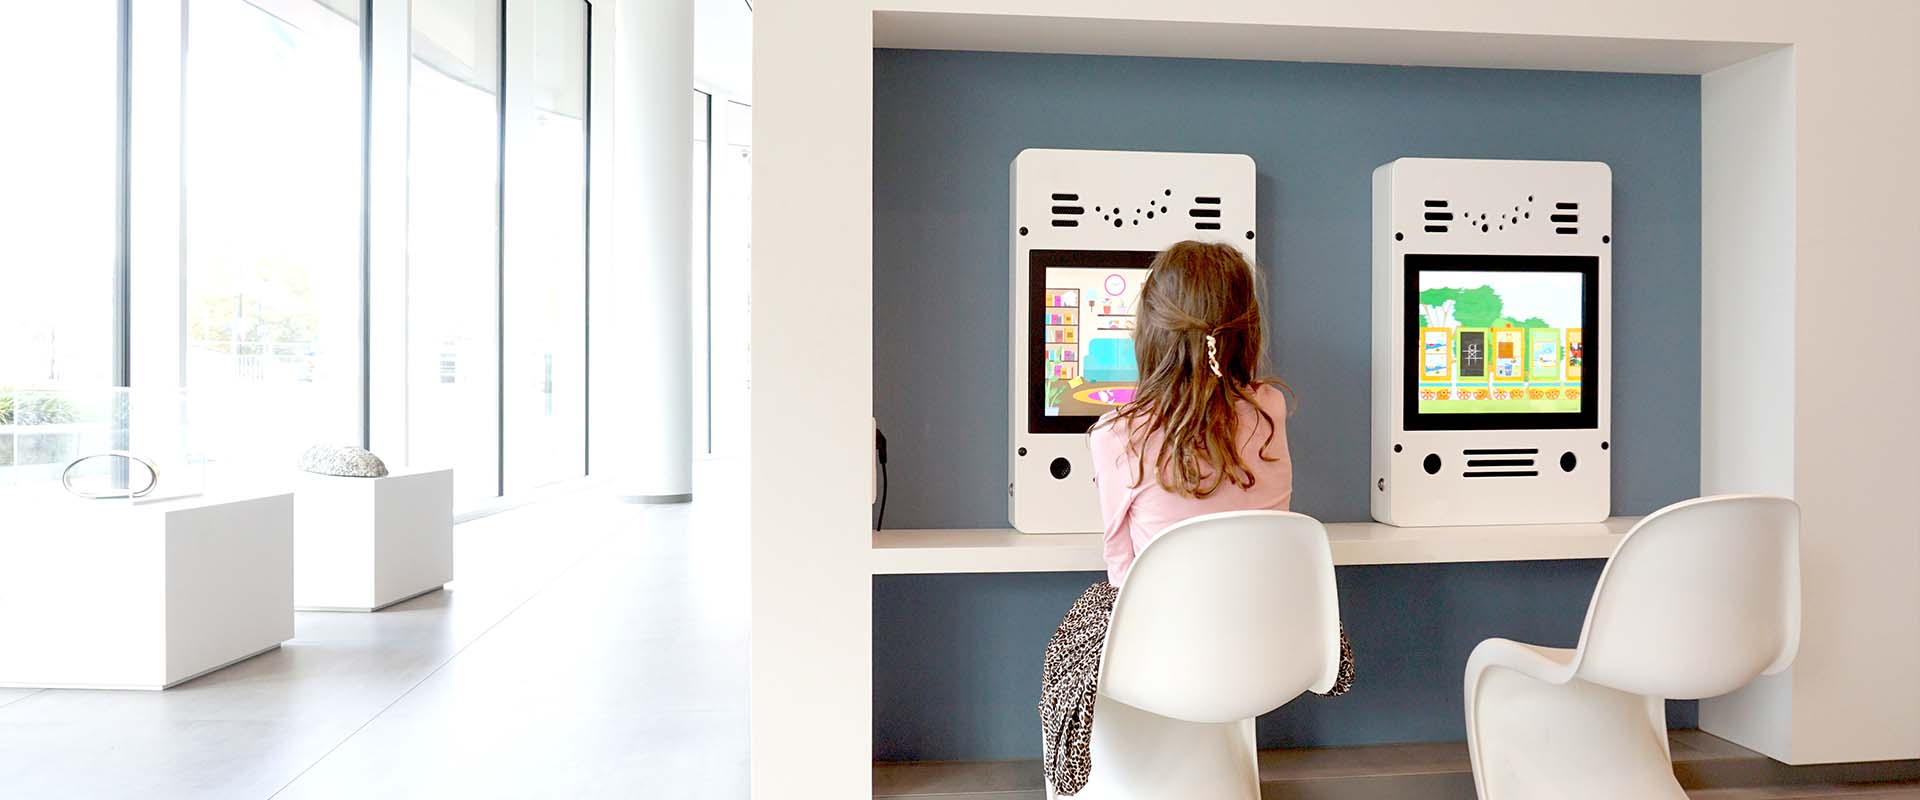 Városháza Almelo I két interaktív játékrendszer a várakozás megkönnyítésére